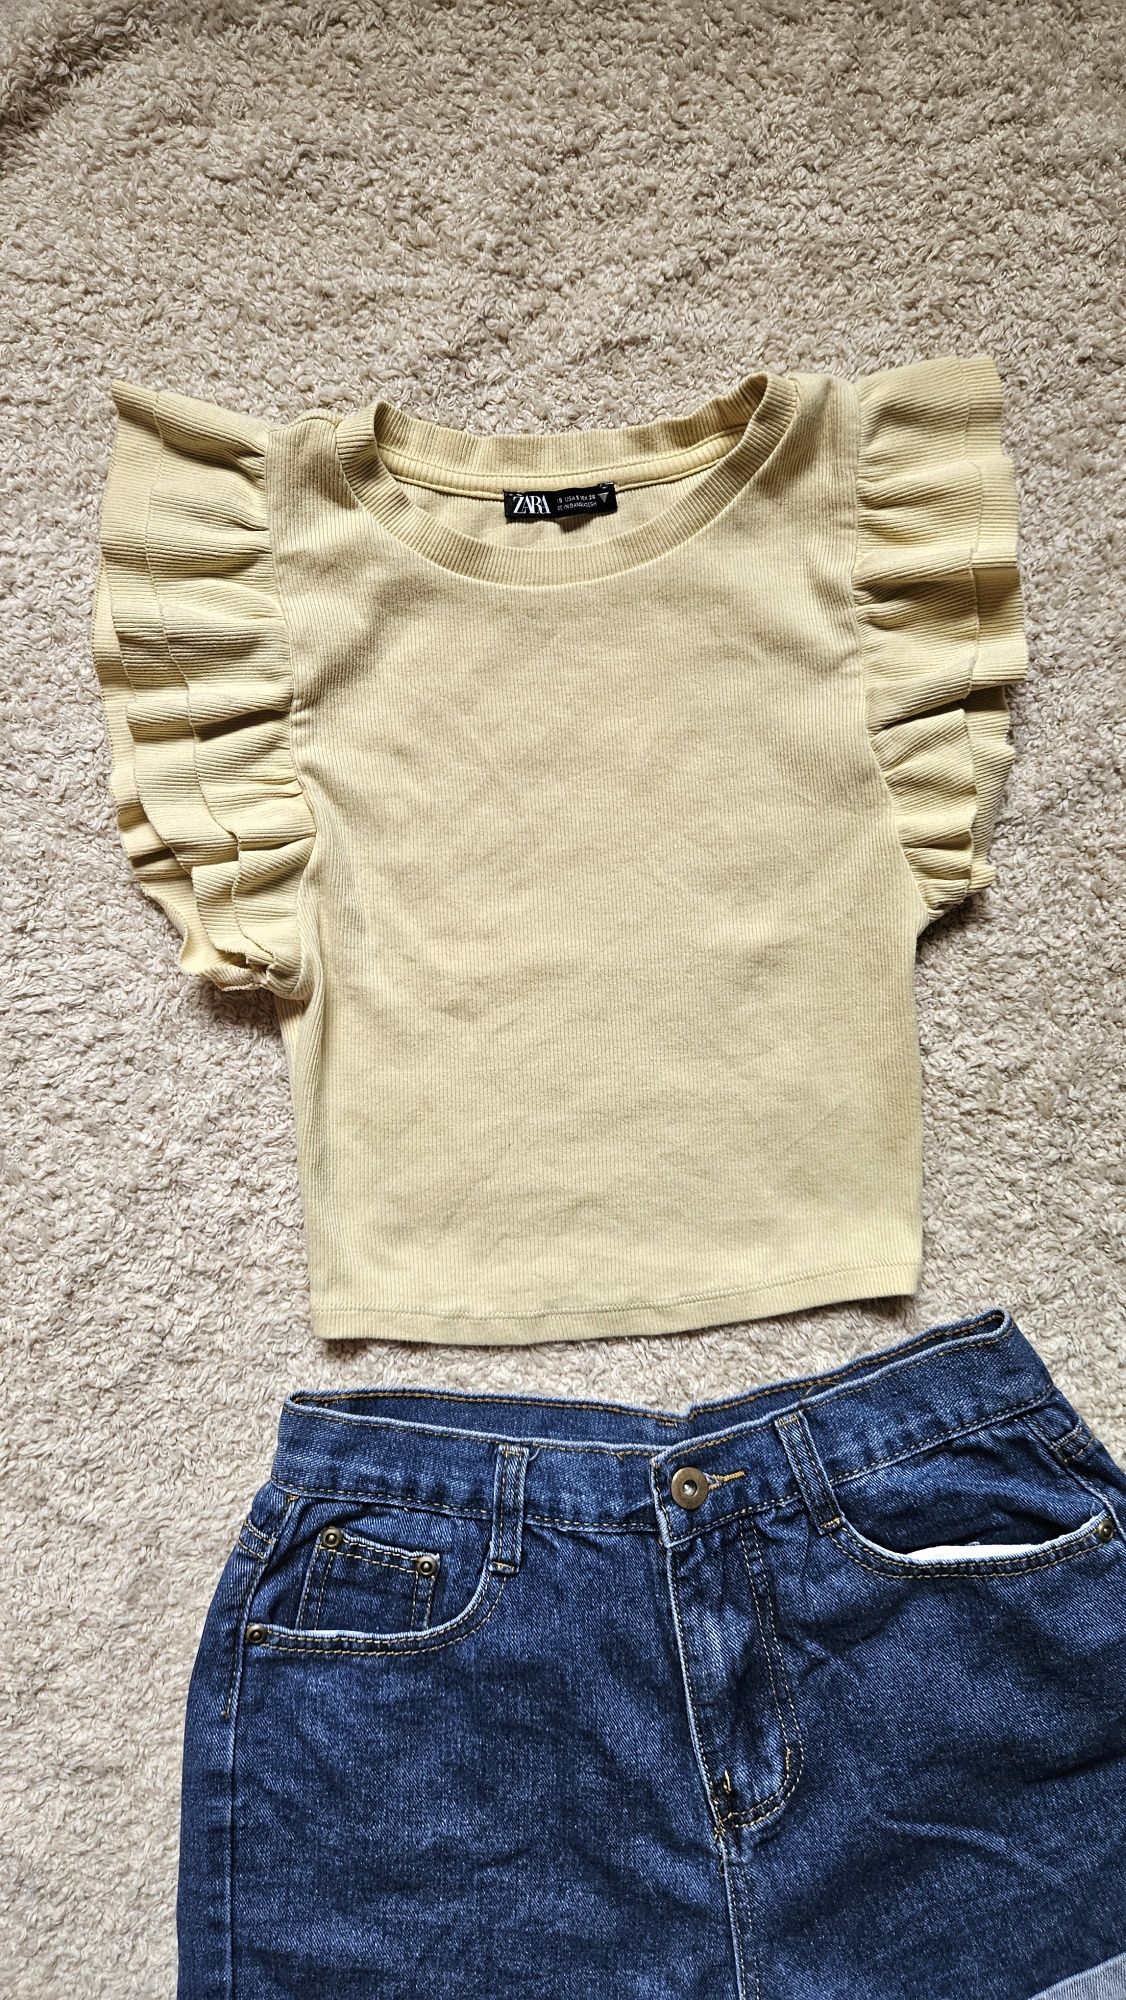 Топ Zara, джинсові шорти, костюм двійка